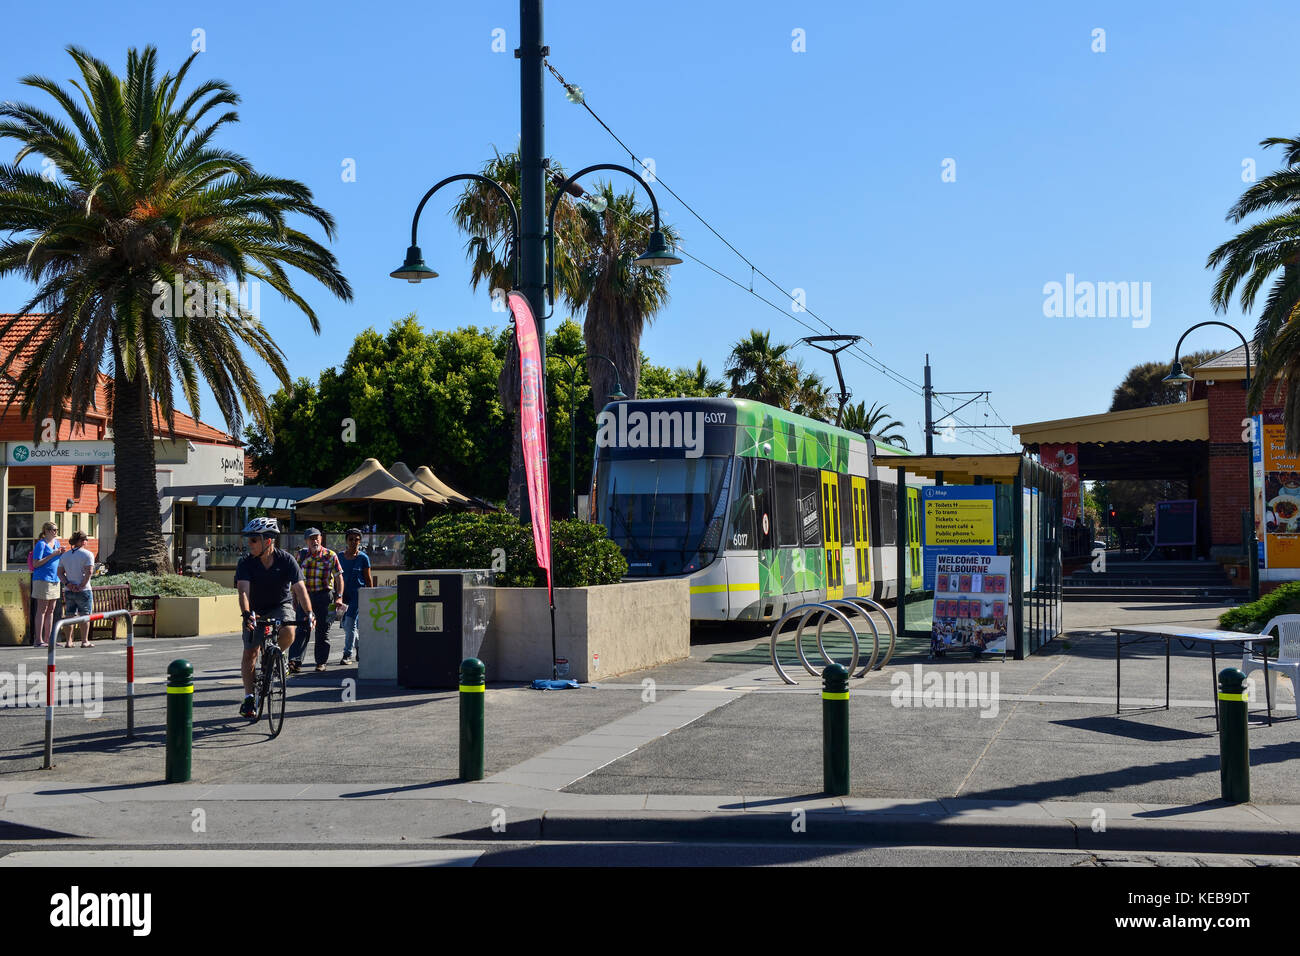 Tram 109 at terminus in Port Melbourne, Victoria, Australia Stock Photo